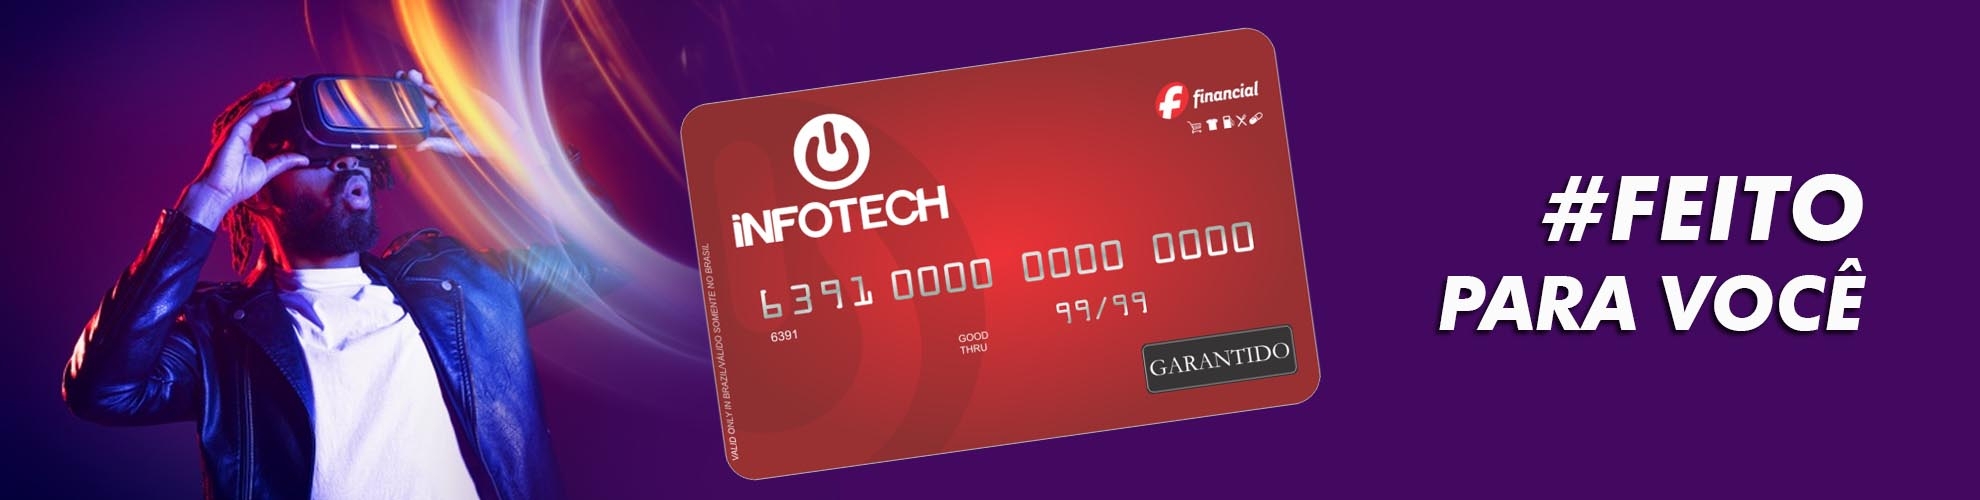 Cartão Infotech - Crédito